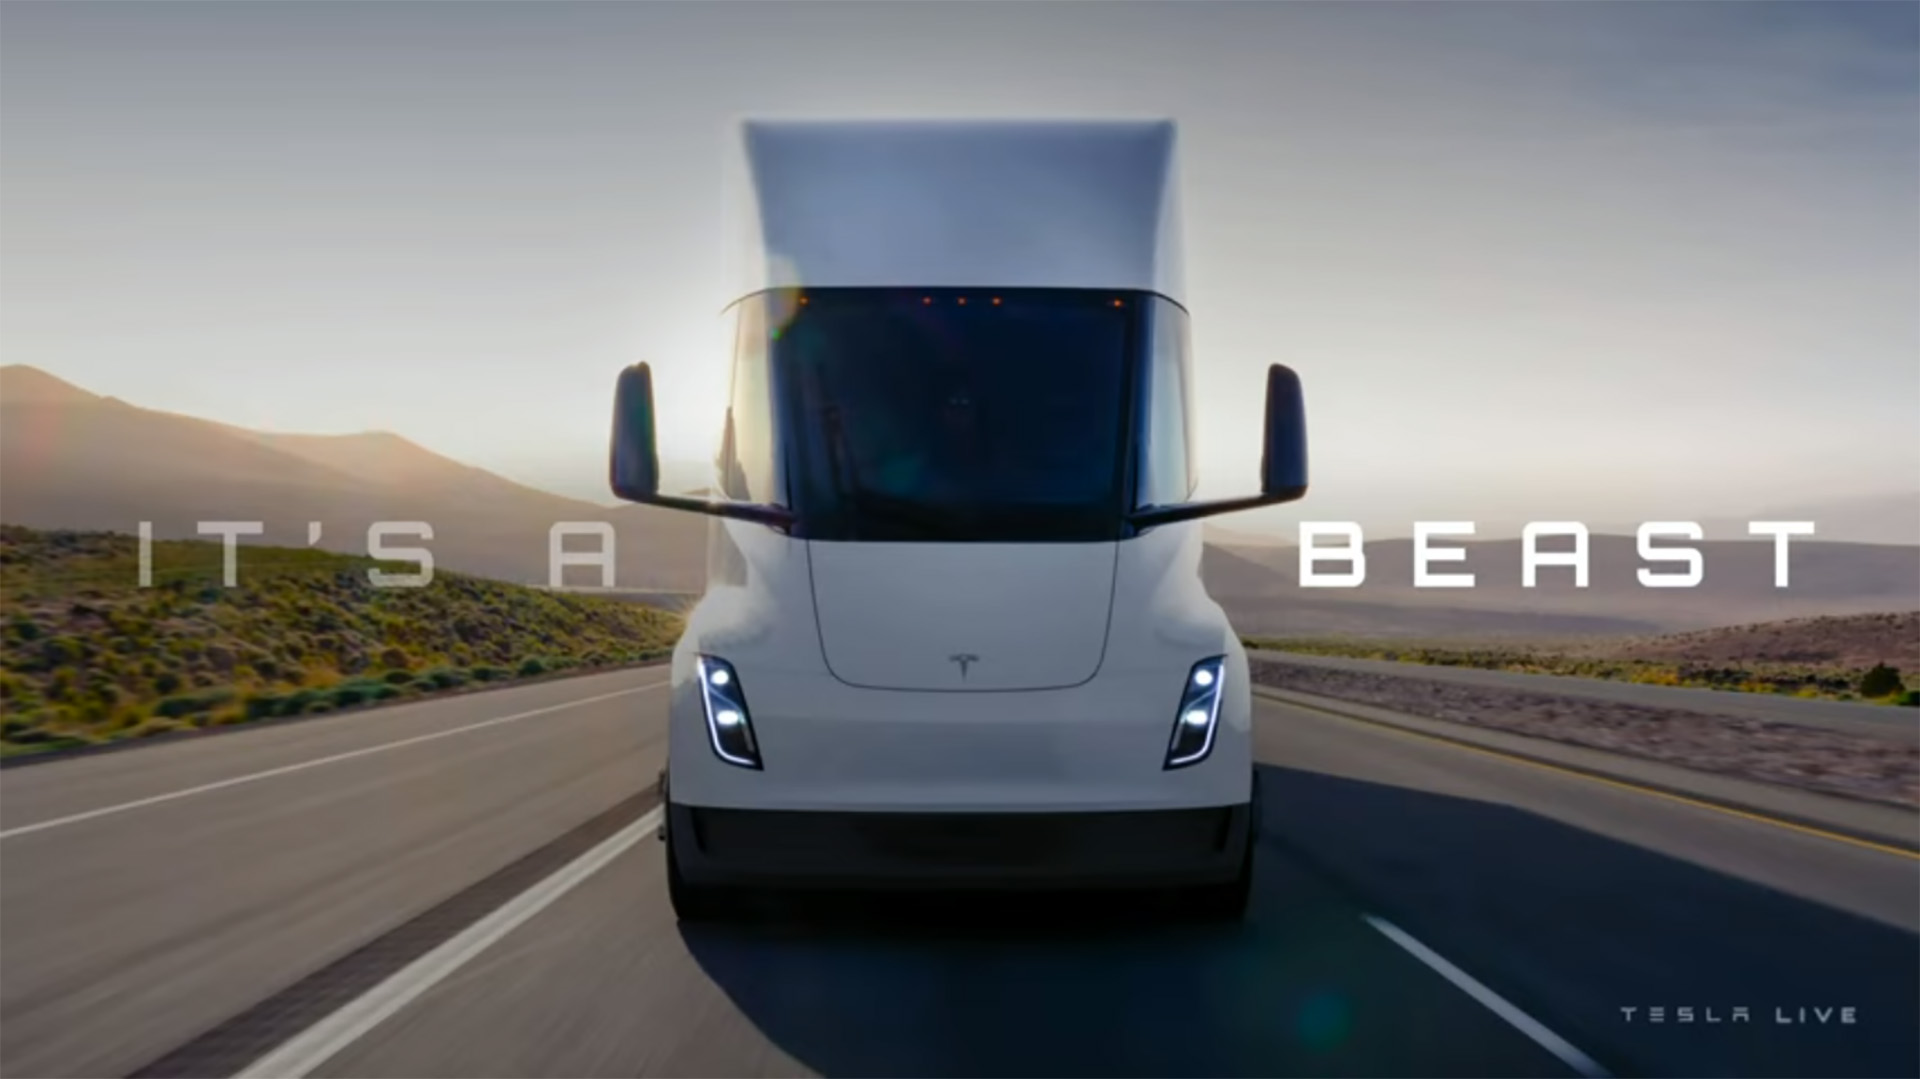 Repitiendo palabras de su creador, Tesla anuncia el camión eléctrico Semi y dice que "es una bestia"